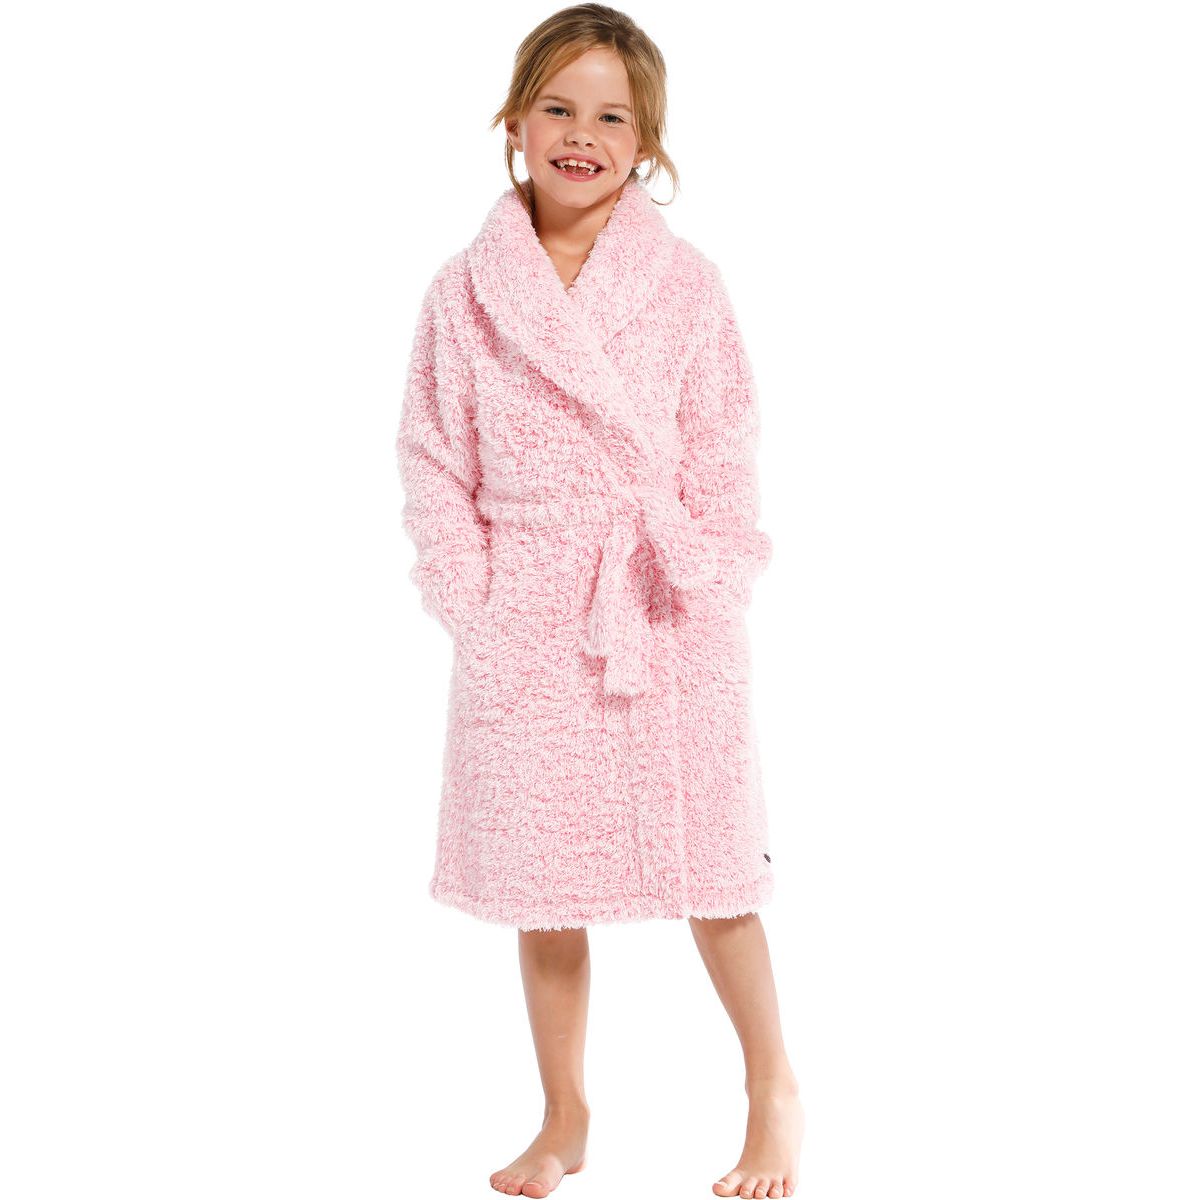 In de genade van Bemiddelaar lineair Kinder badjas roze Rebelle | Gratis verzending en retour | Online de  mooiste pyjama's, nachthemden, ondermode en meer